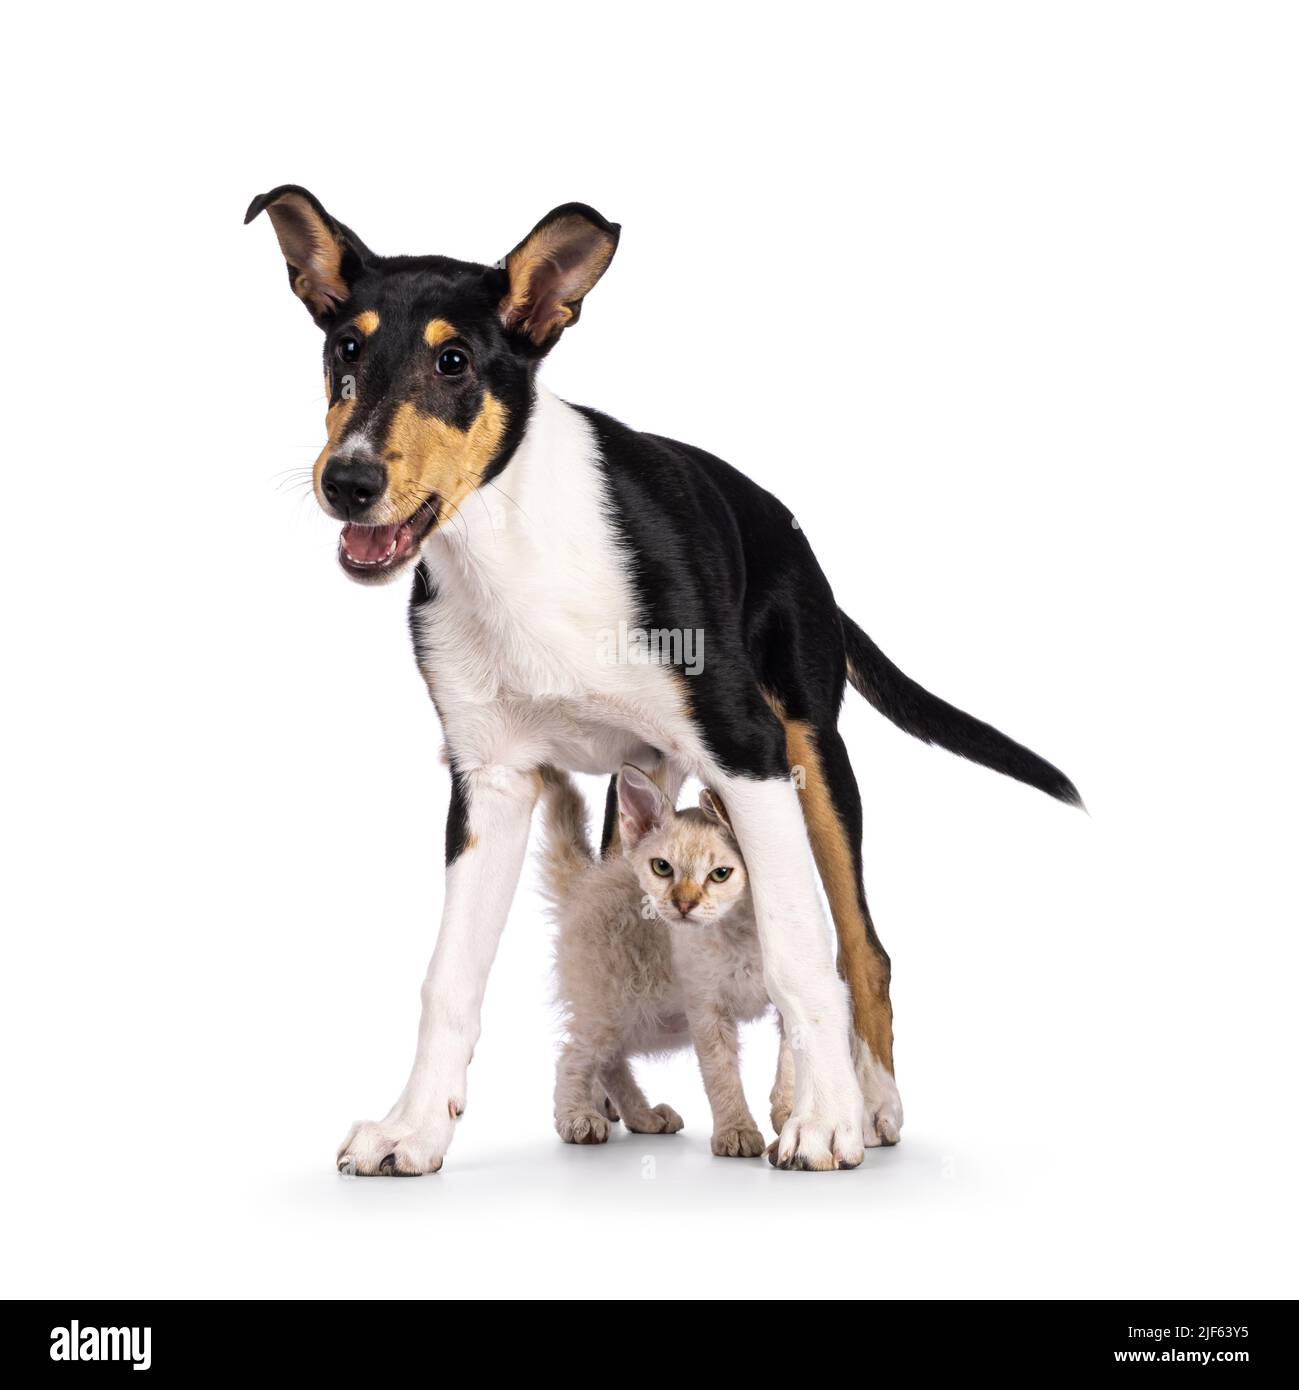 Liscio cucciolo di cane Collie in piedi sopra e gatto gattino LaPerm. Entrambi guardando verso la fotocamera. Isolato su sfondo bianco. Foto Stock